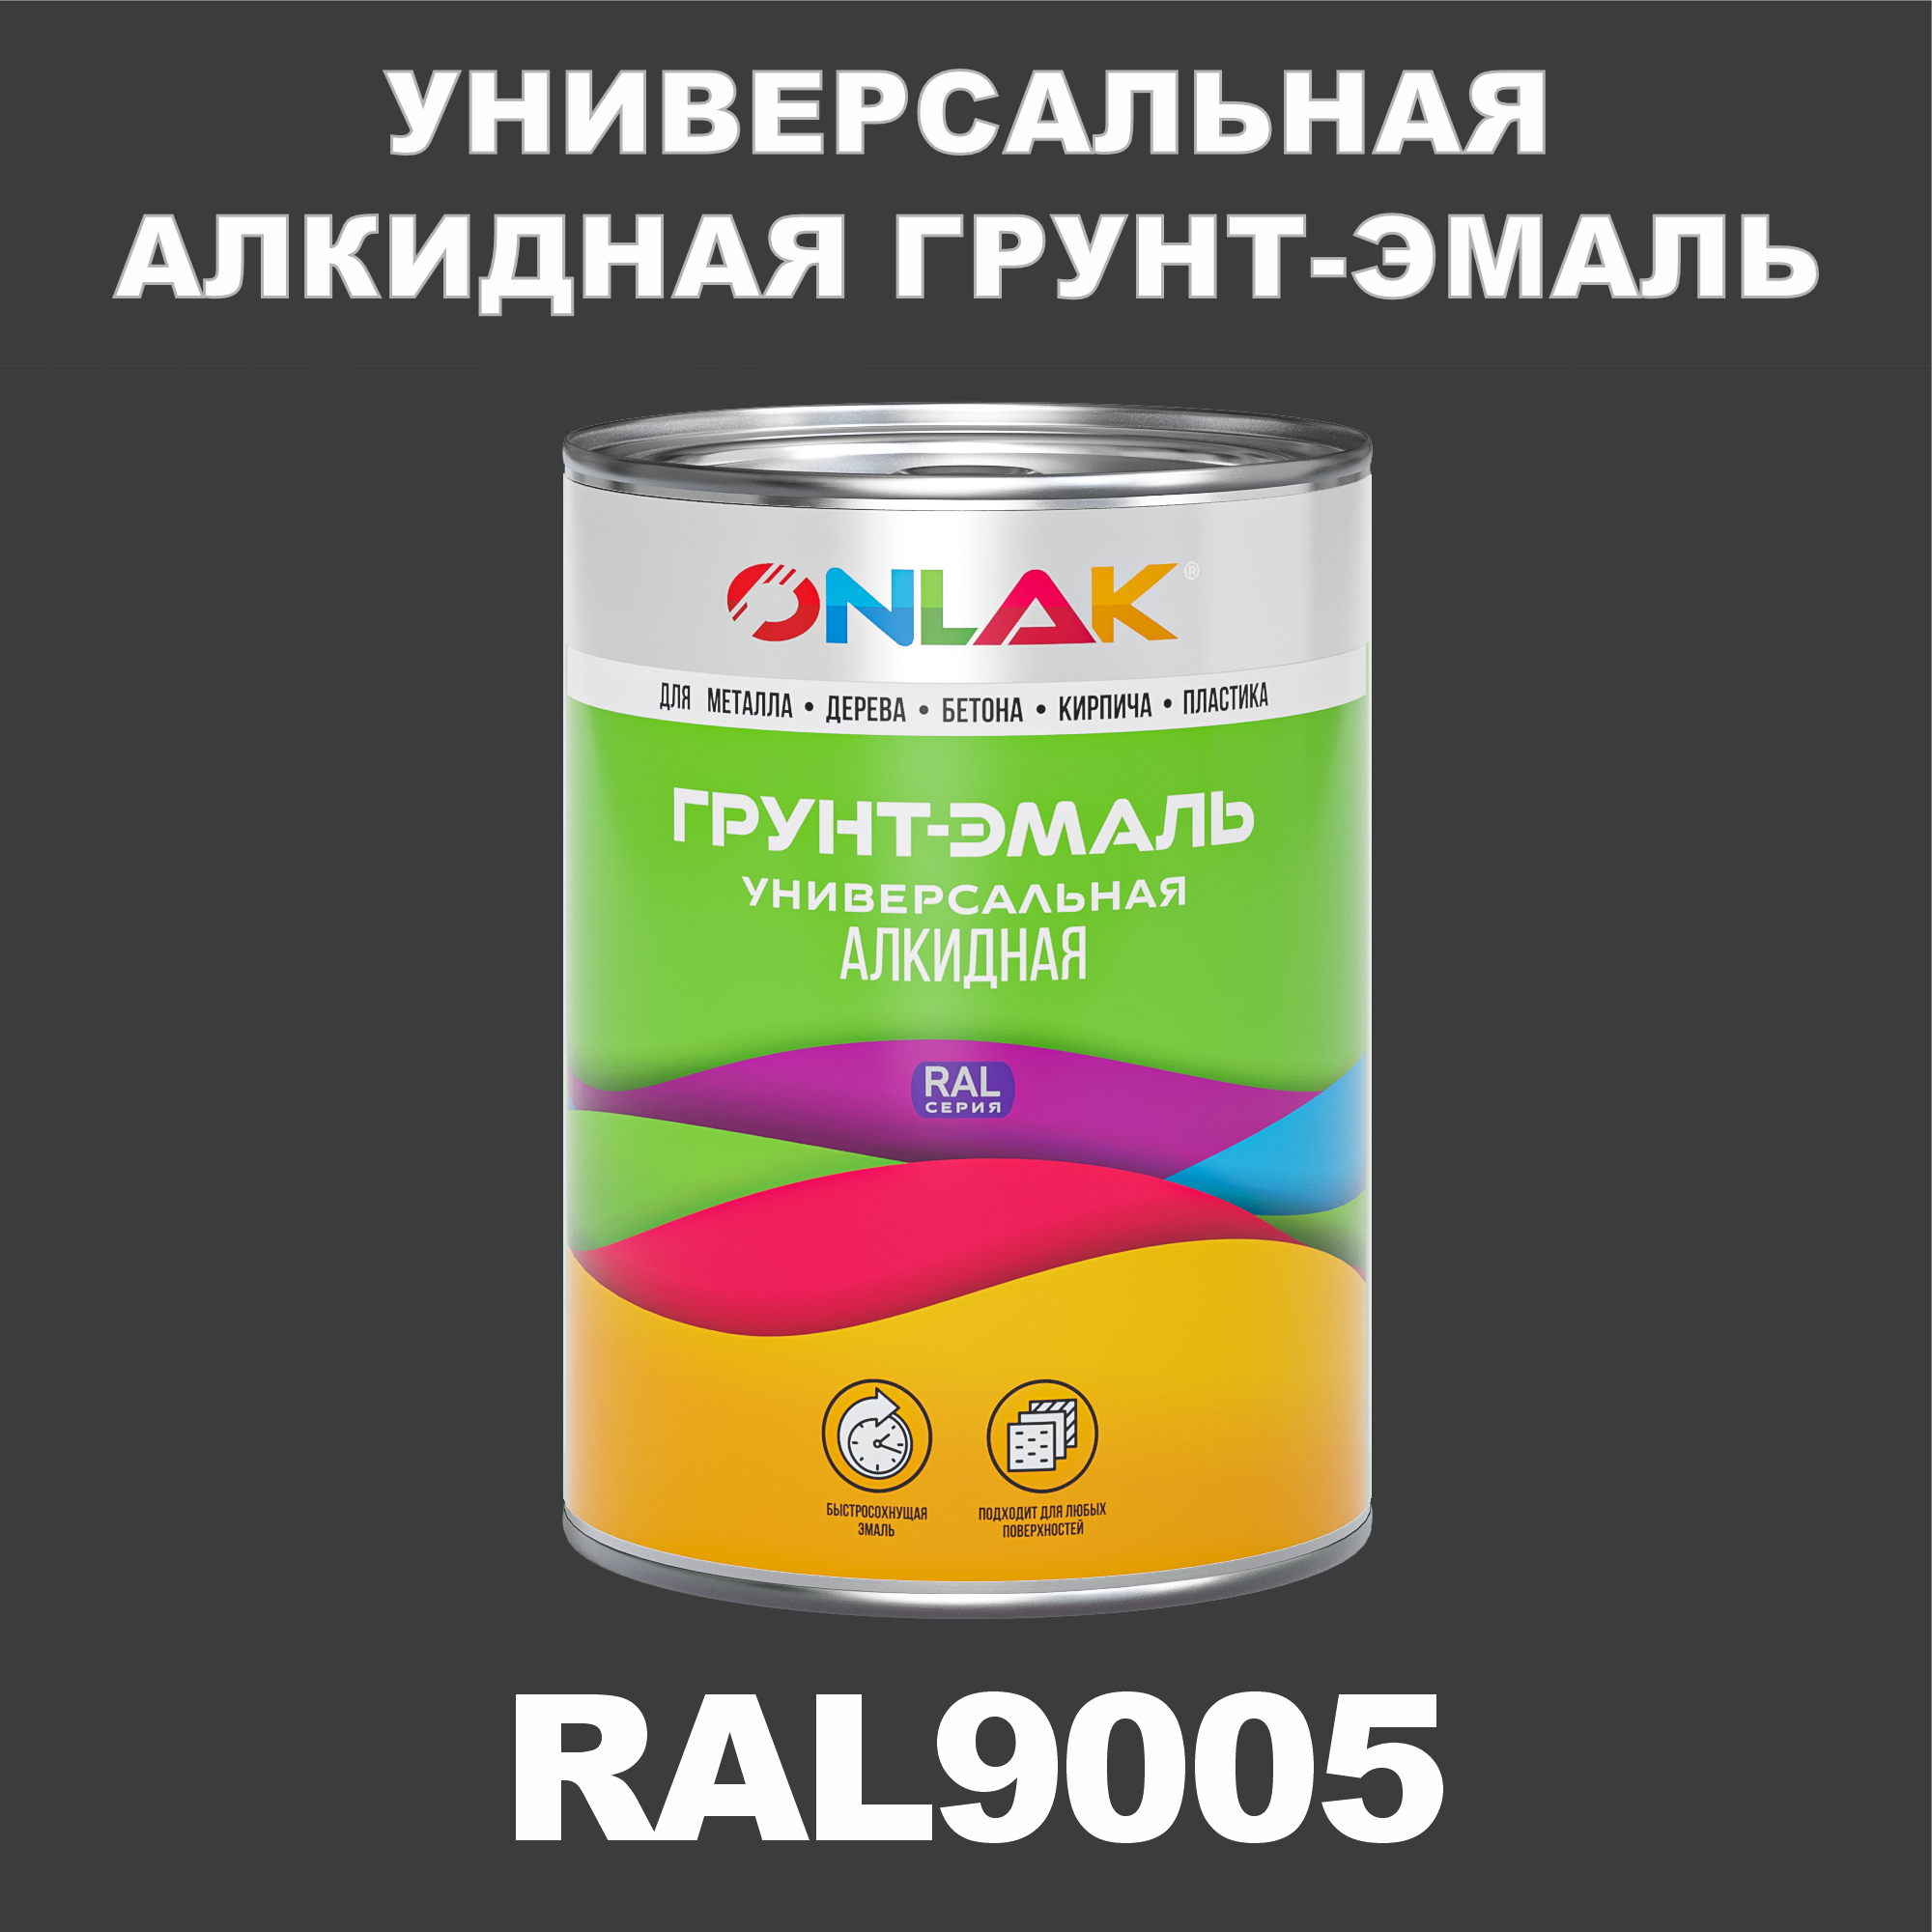 Грунт-эмаль ONLAK 1К RAL9005 антикоррозионная алкидная по металлу по ржавчине 1 кг грунт эмаль престиж по ржавчине алкидная серая 10 кг